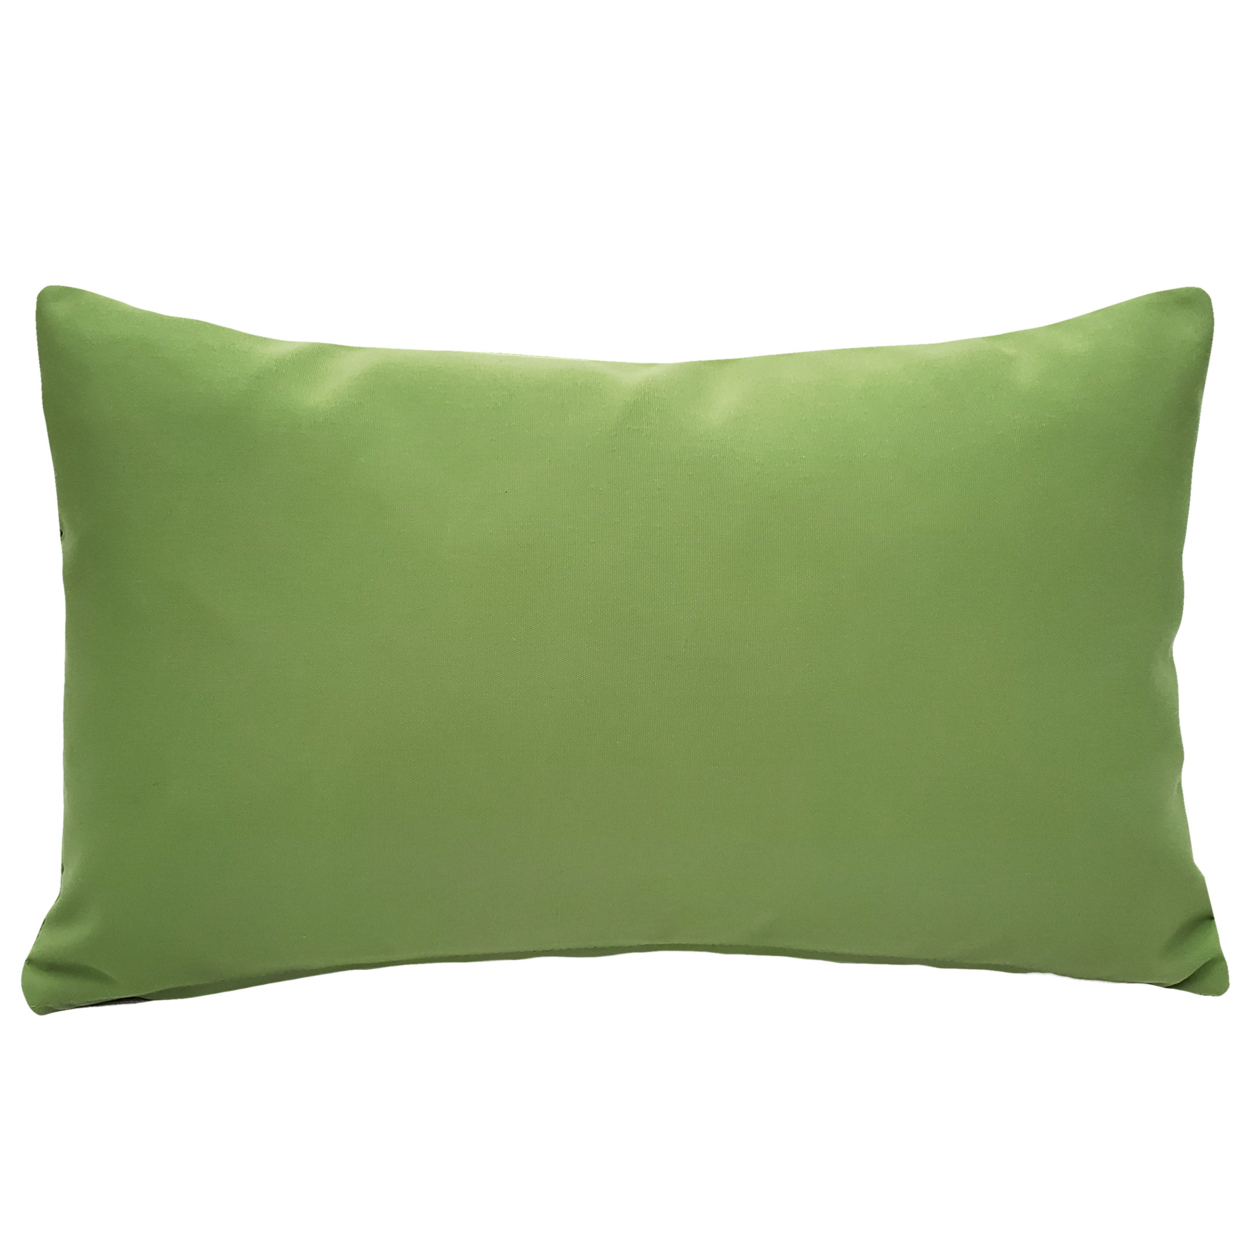 Sunbrella Ginko Green Outdoor Pillow 12x19, With Polyfill Insert